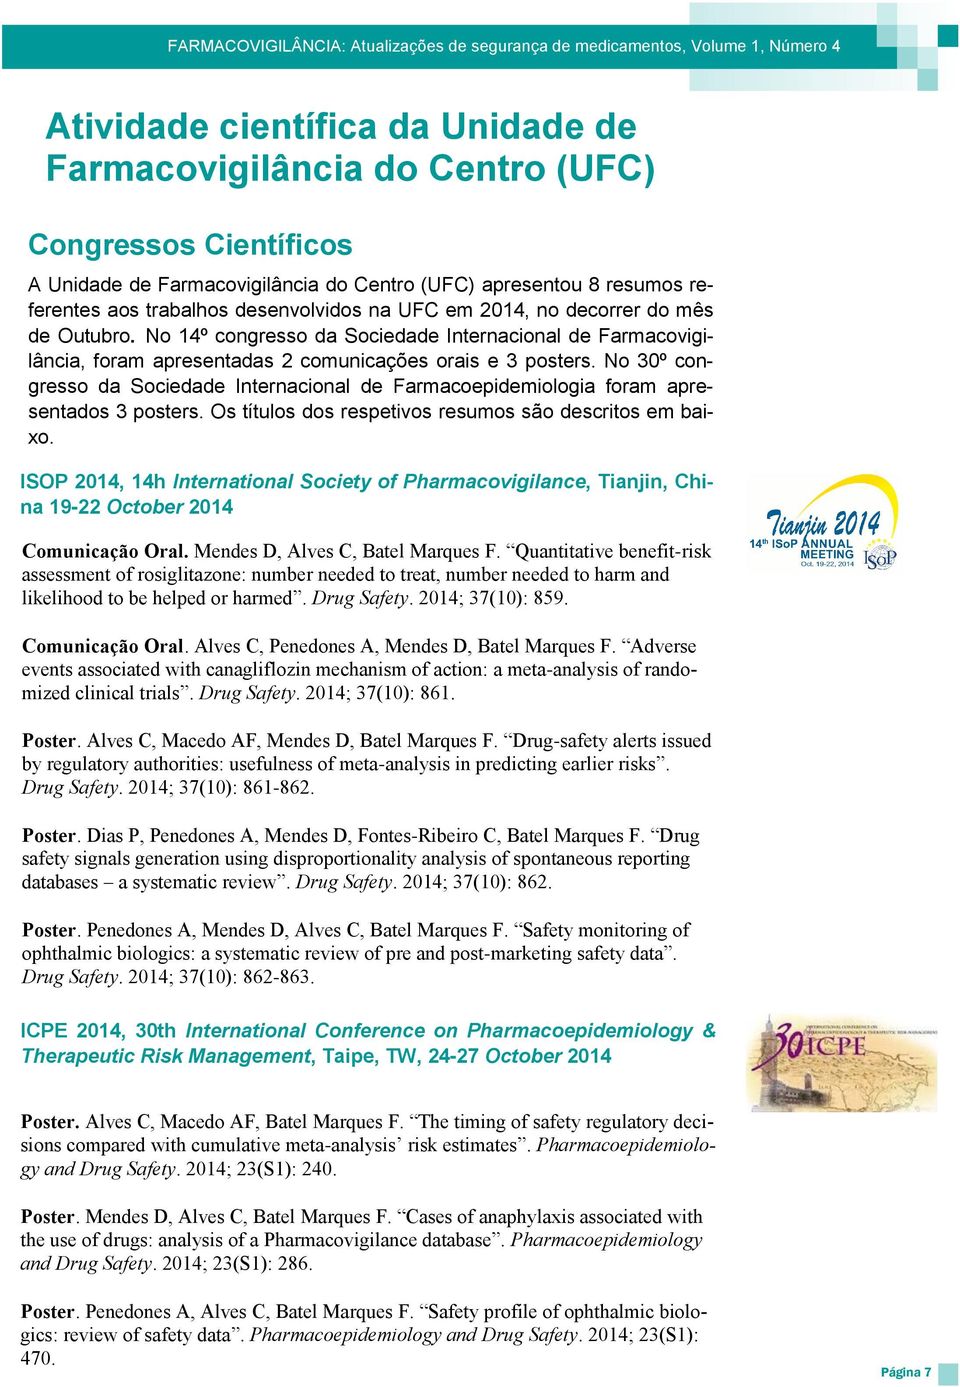 No 30º congresso da Sociedade Internacional de Farmacoepidemiologia foram apresentados 3 posters. Os títulos dos respetivos resumos são descritos em baixo.